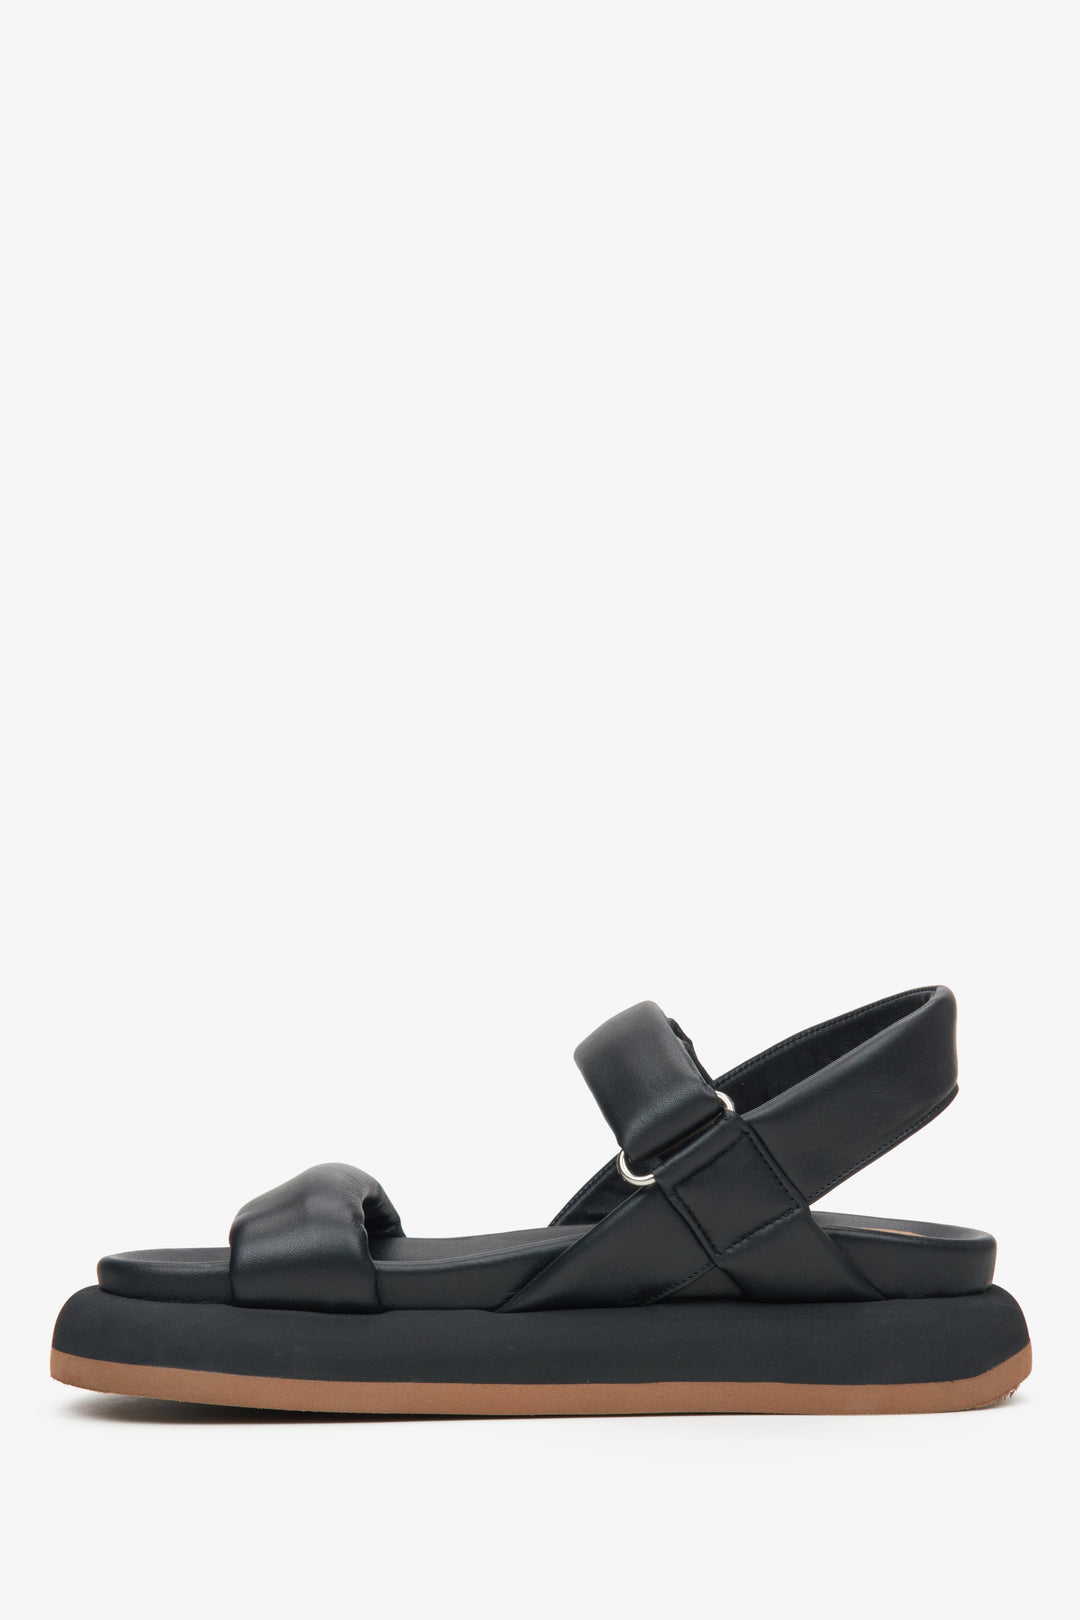 Wygodne czarne sandały damskie Estro - profil buta.